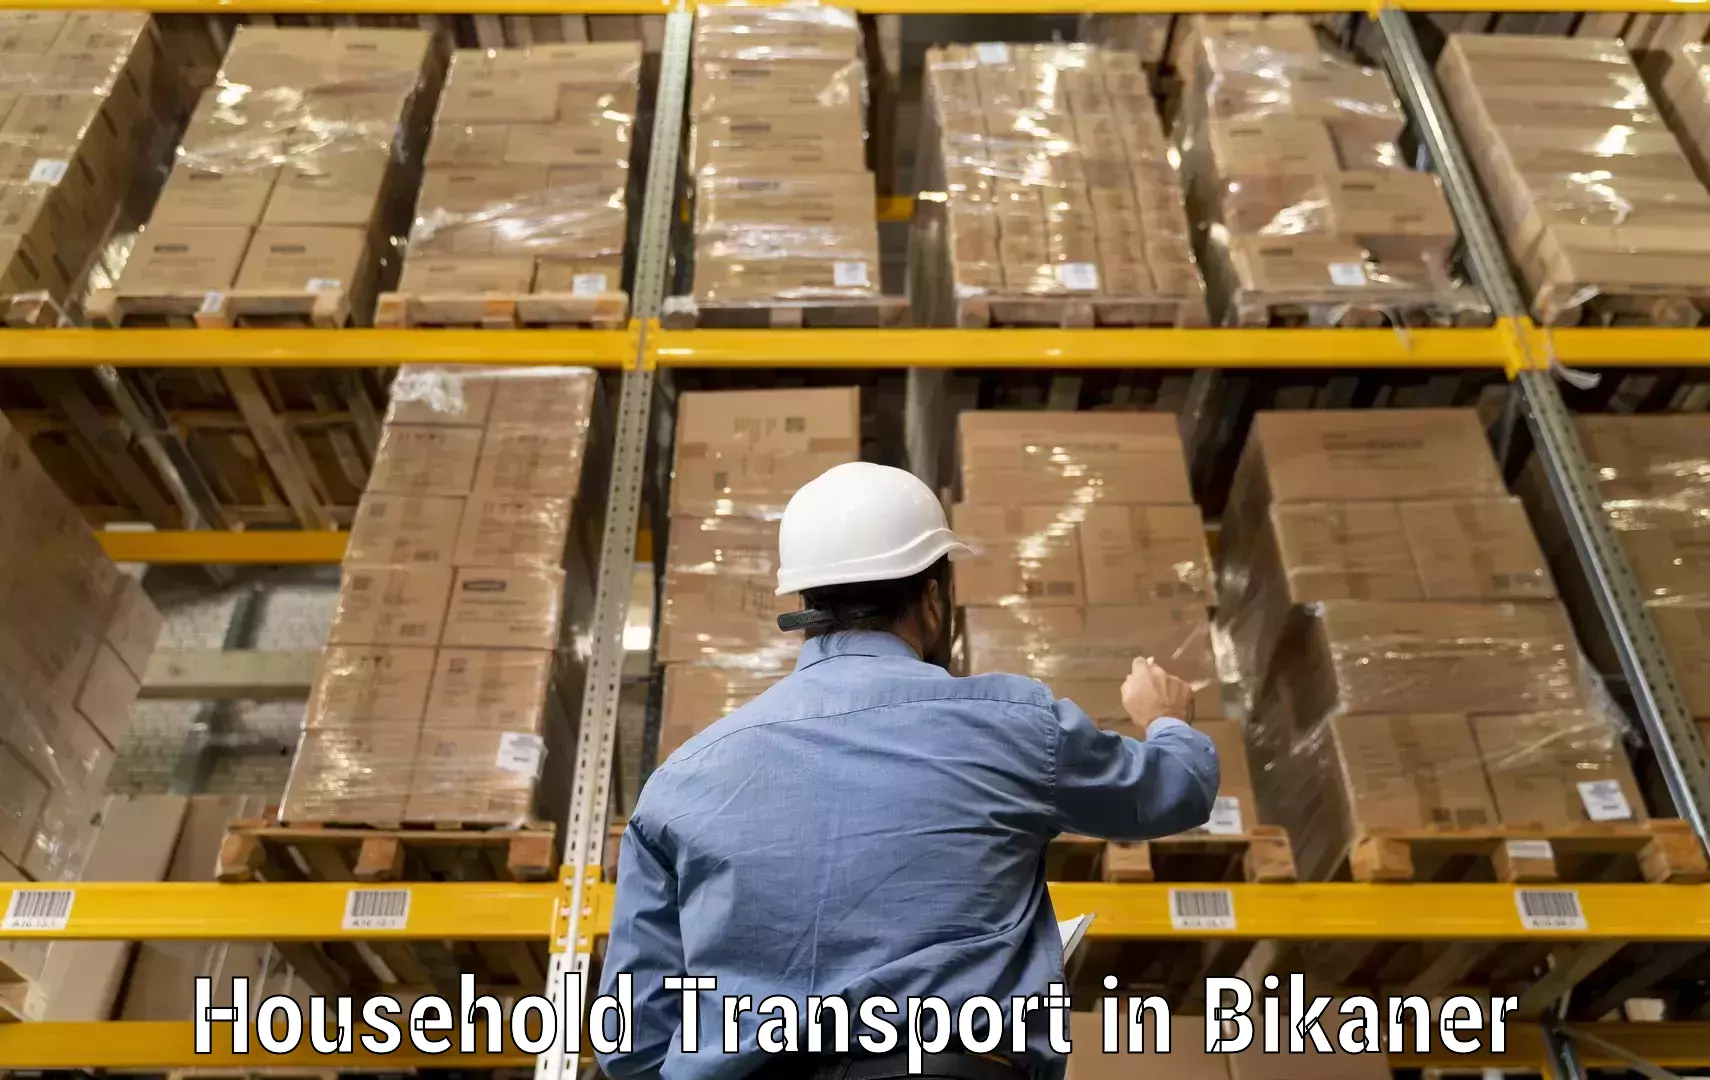 Skilled household transport in Bikaner